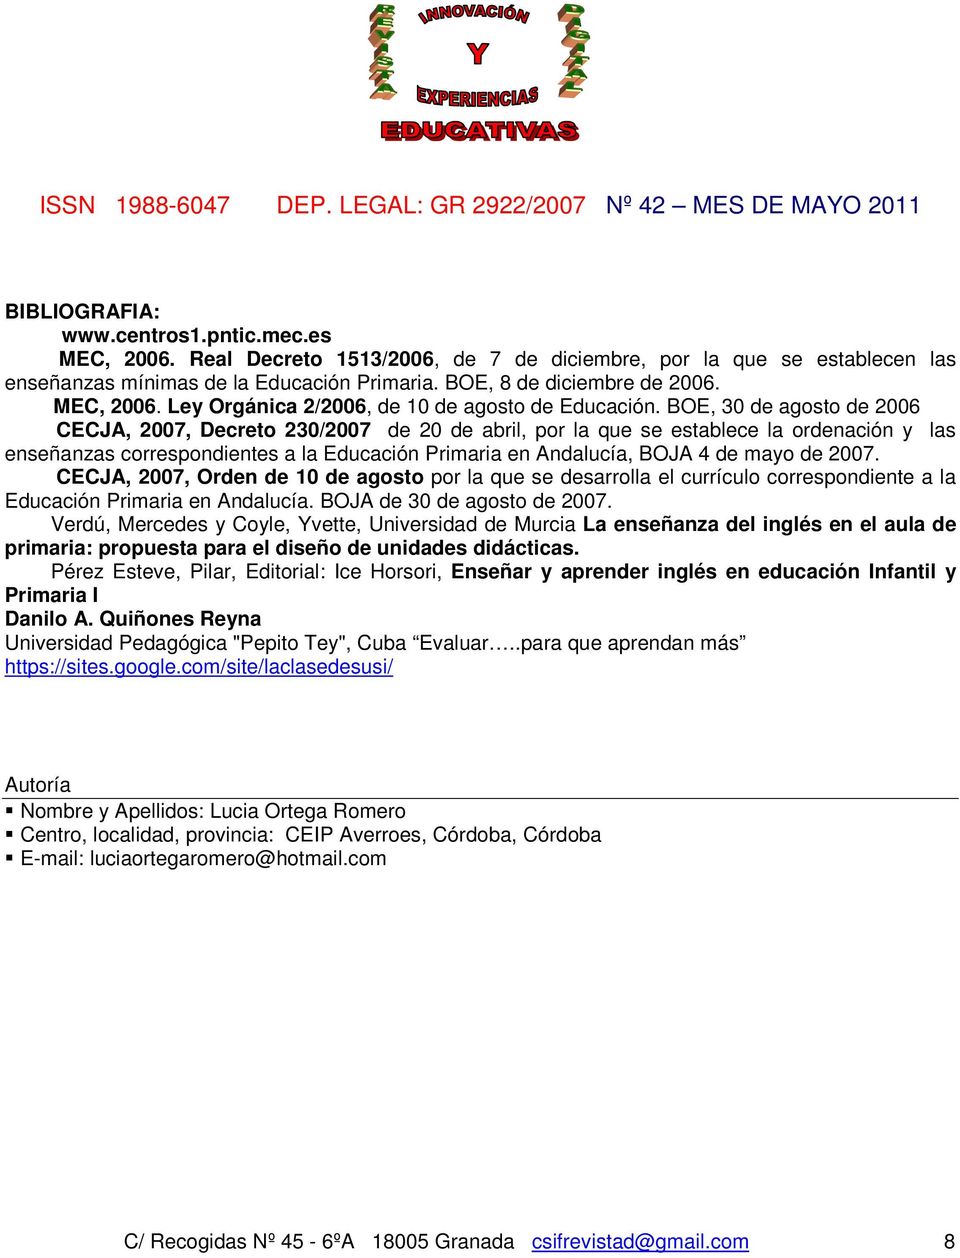 BOE, 30 de agosto de 2006 CECJA, 2007, Decreto 230/2007 de 20 de abril, por la que se establece la ordenación y las enseñanzas correspondientes a la Educación Primaria en Andalucía, BOJA 4 de mayo de